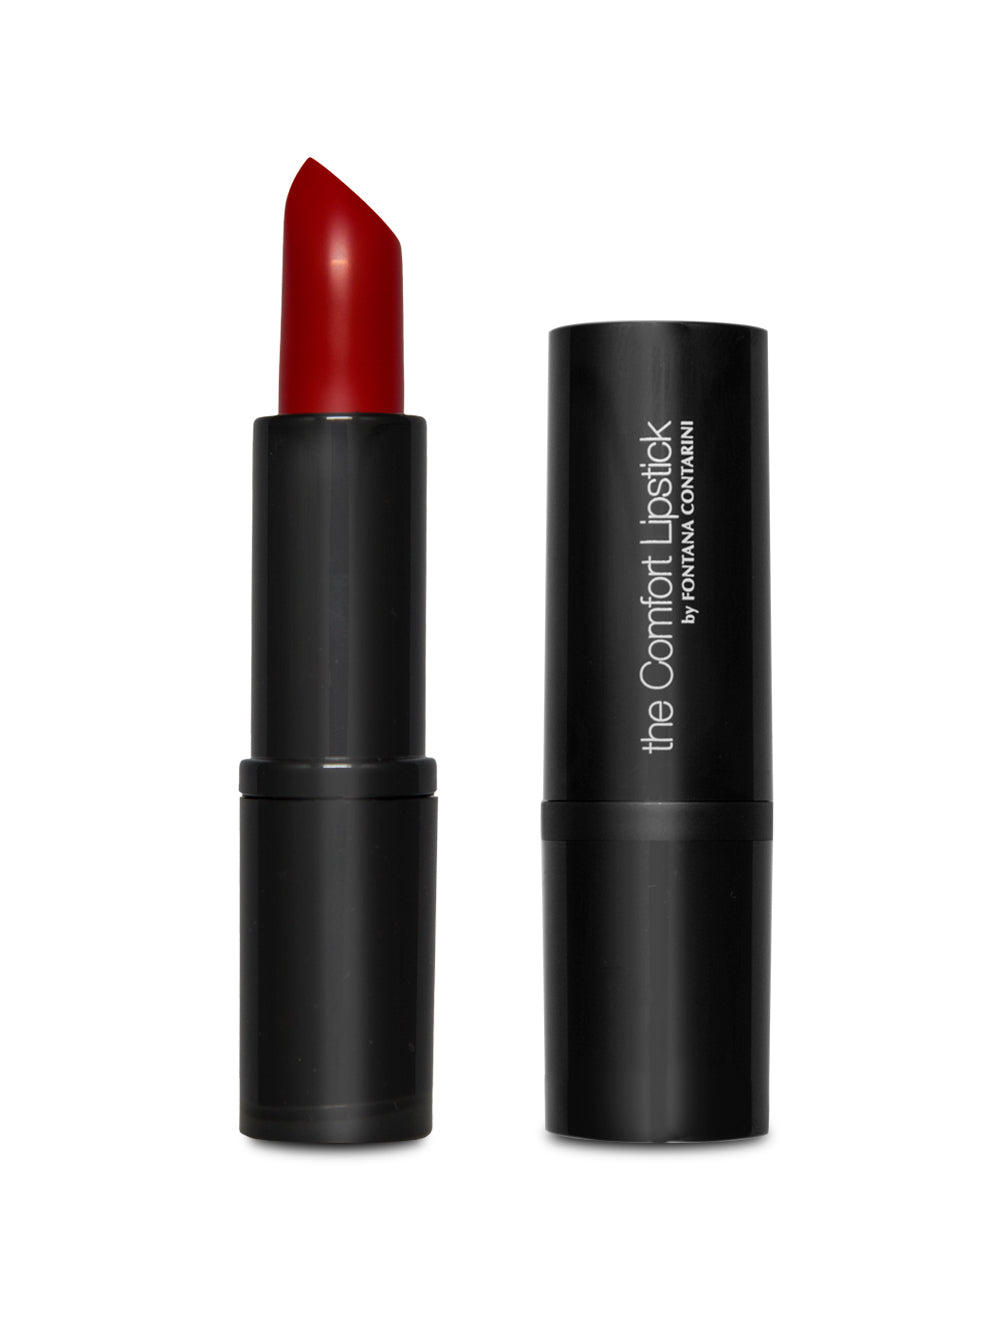 Fontana Contarini Rossetto Cremoso colore Rosso -The Comfort Lipstick 8C